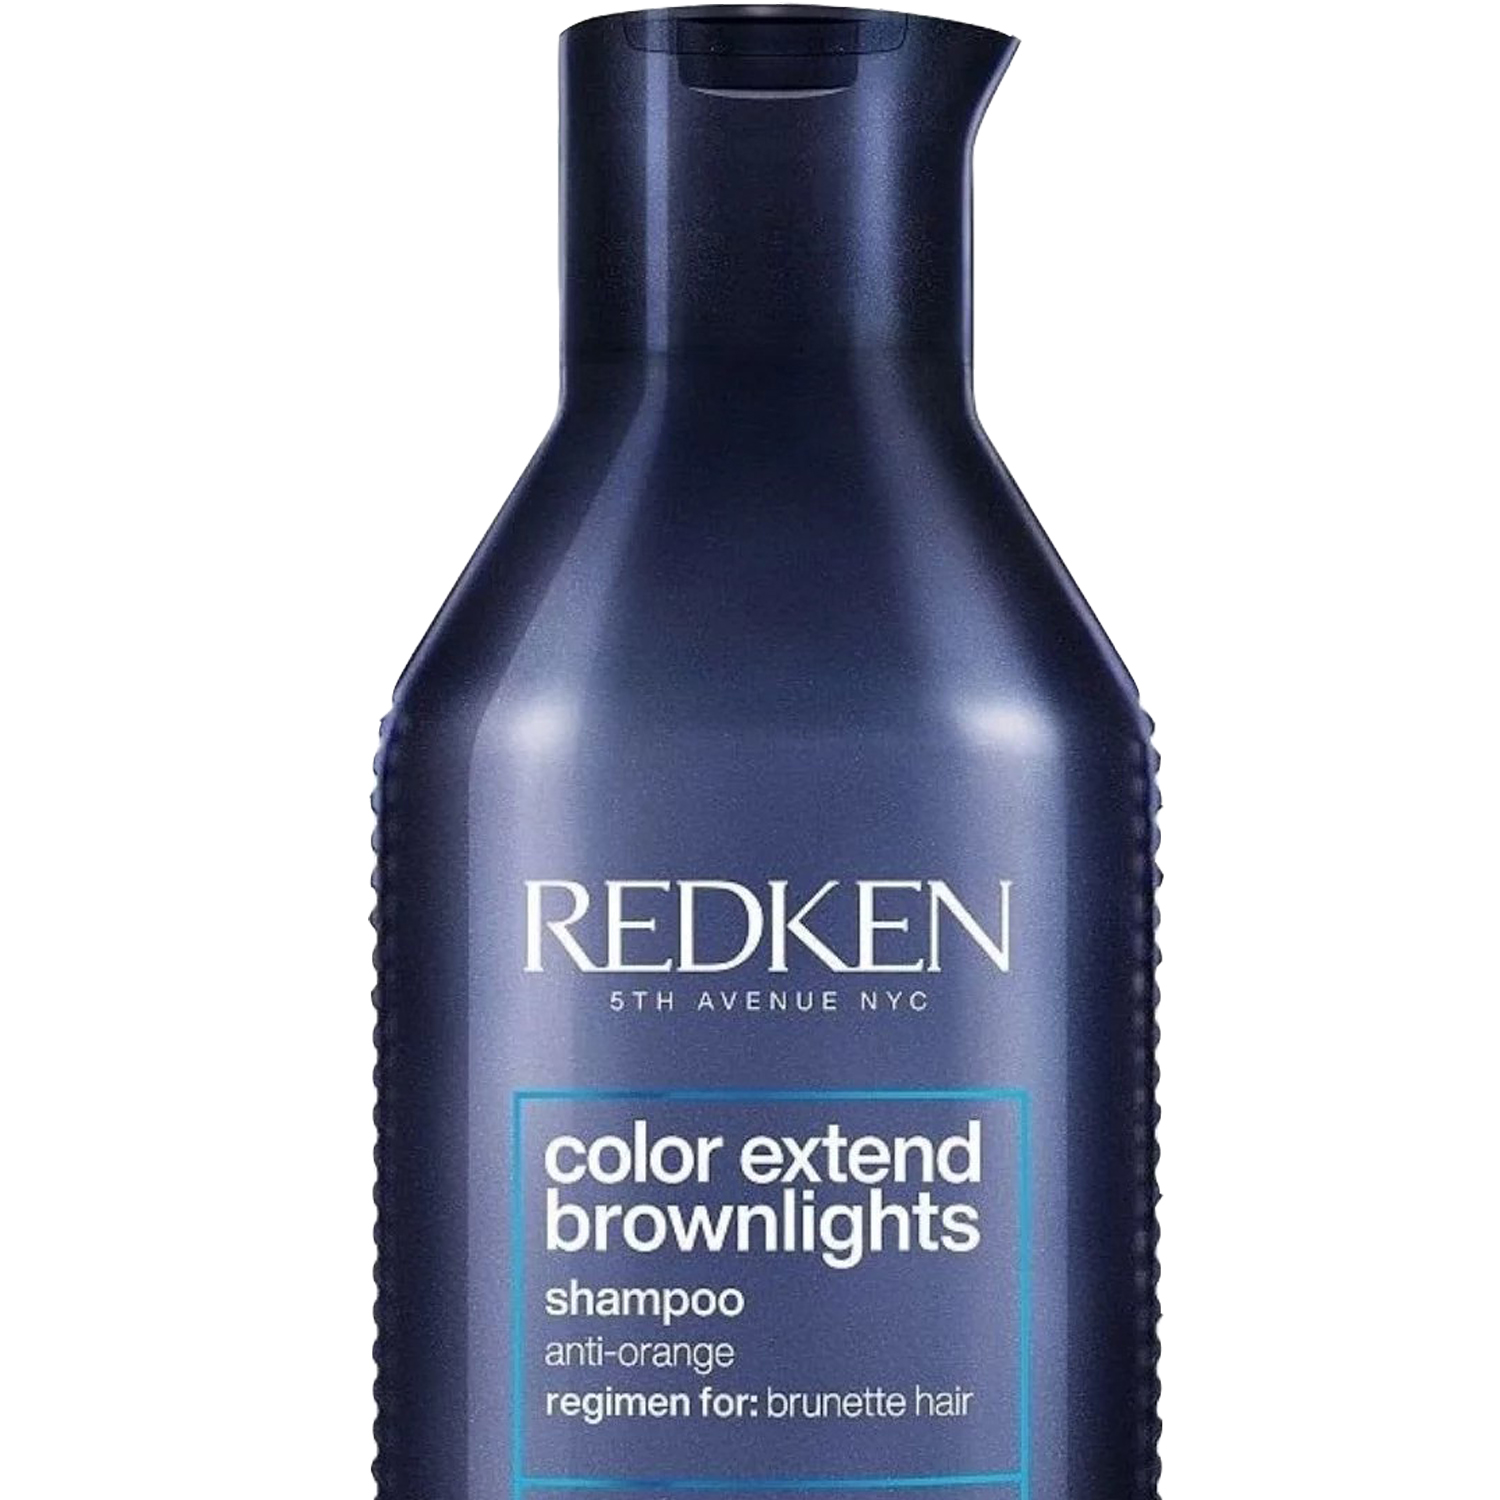 Redken Color Extend Brownlights Shampoo for Brunette Hair 10.1 oz - image 2 of 5